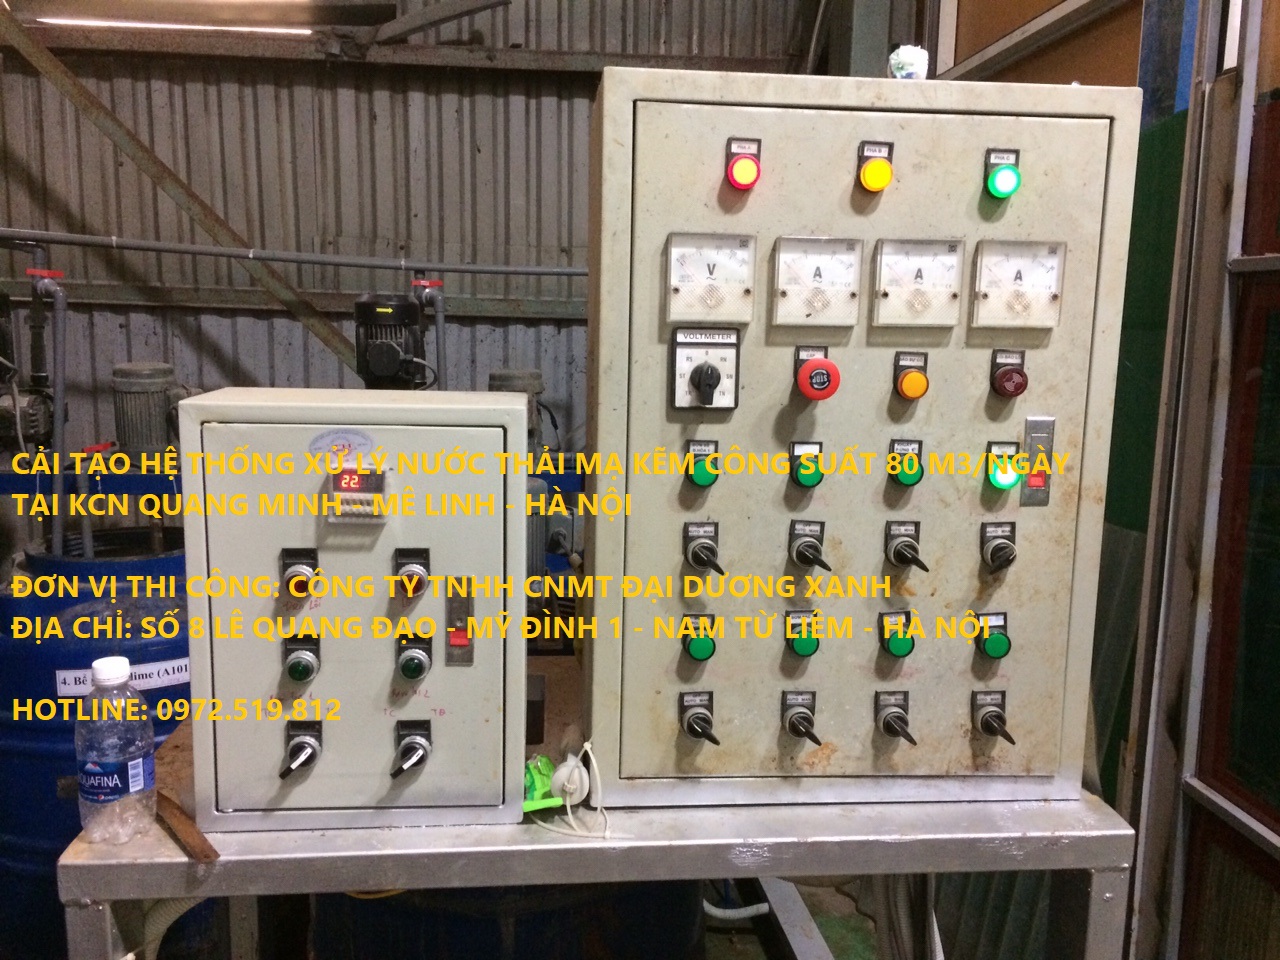 Cải tạo hệ thống xử lý nước thải mạ kẽm - tủ điện điều khiển